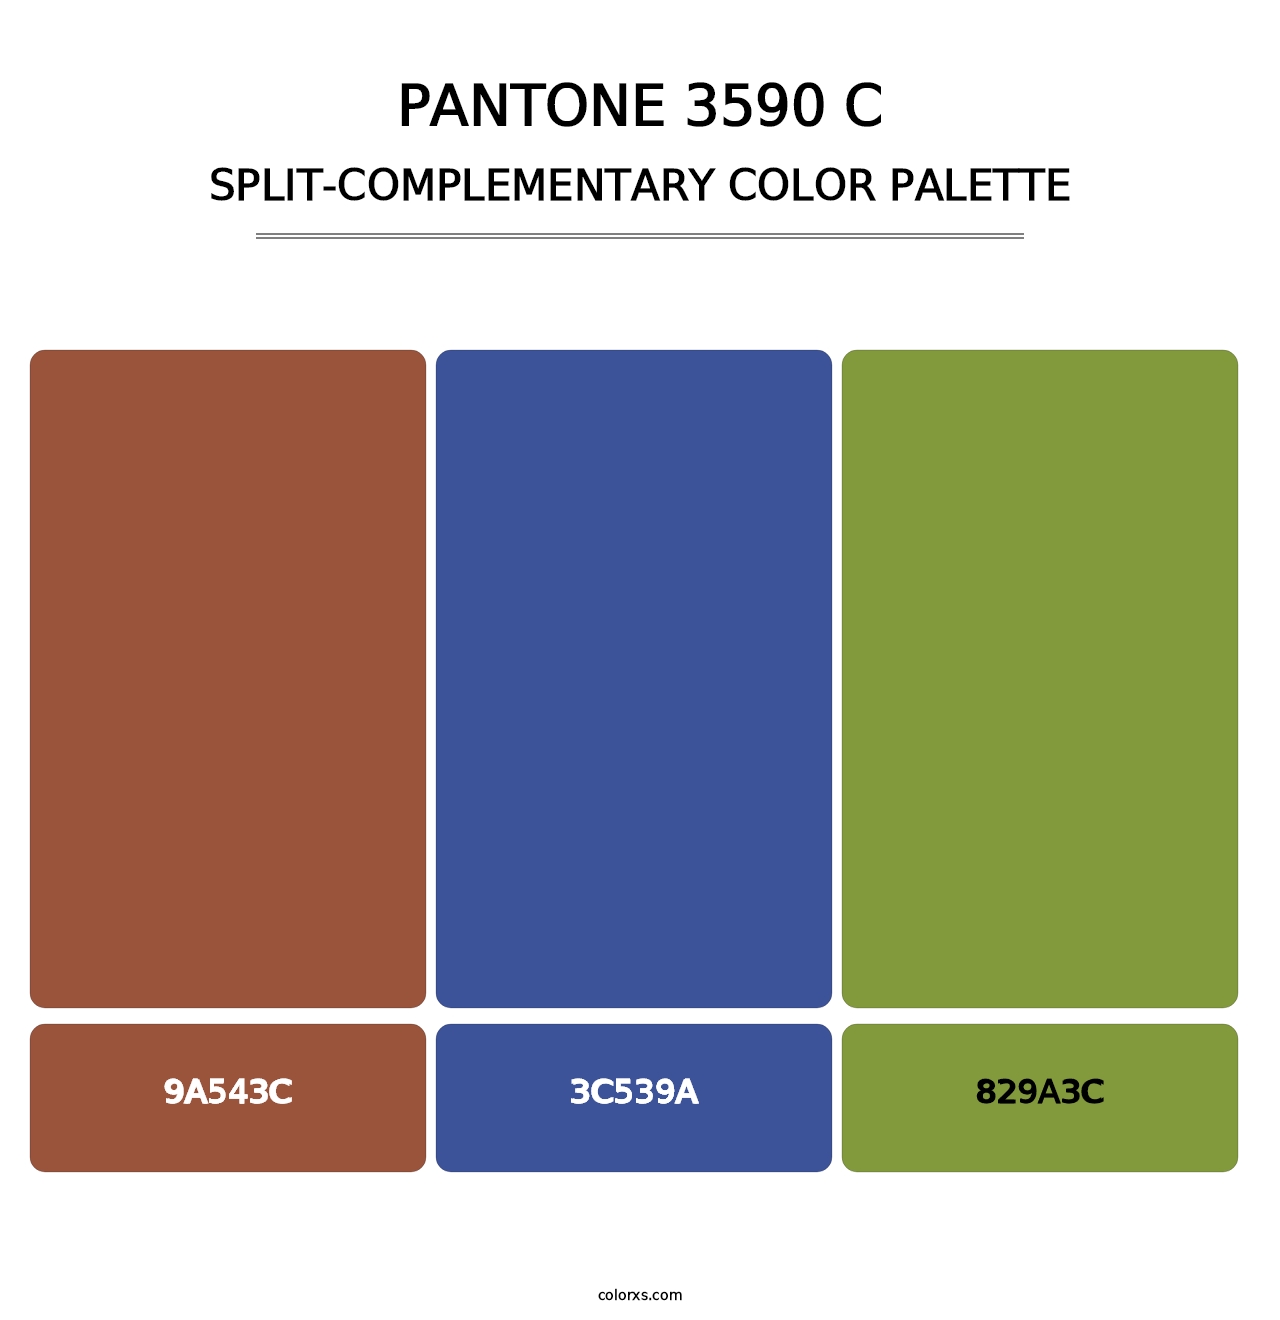 PANTONE 3590 C - Split-Complementary Color Palette